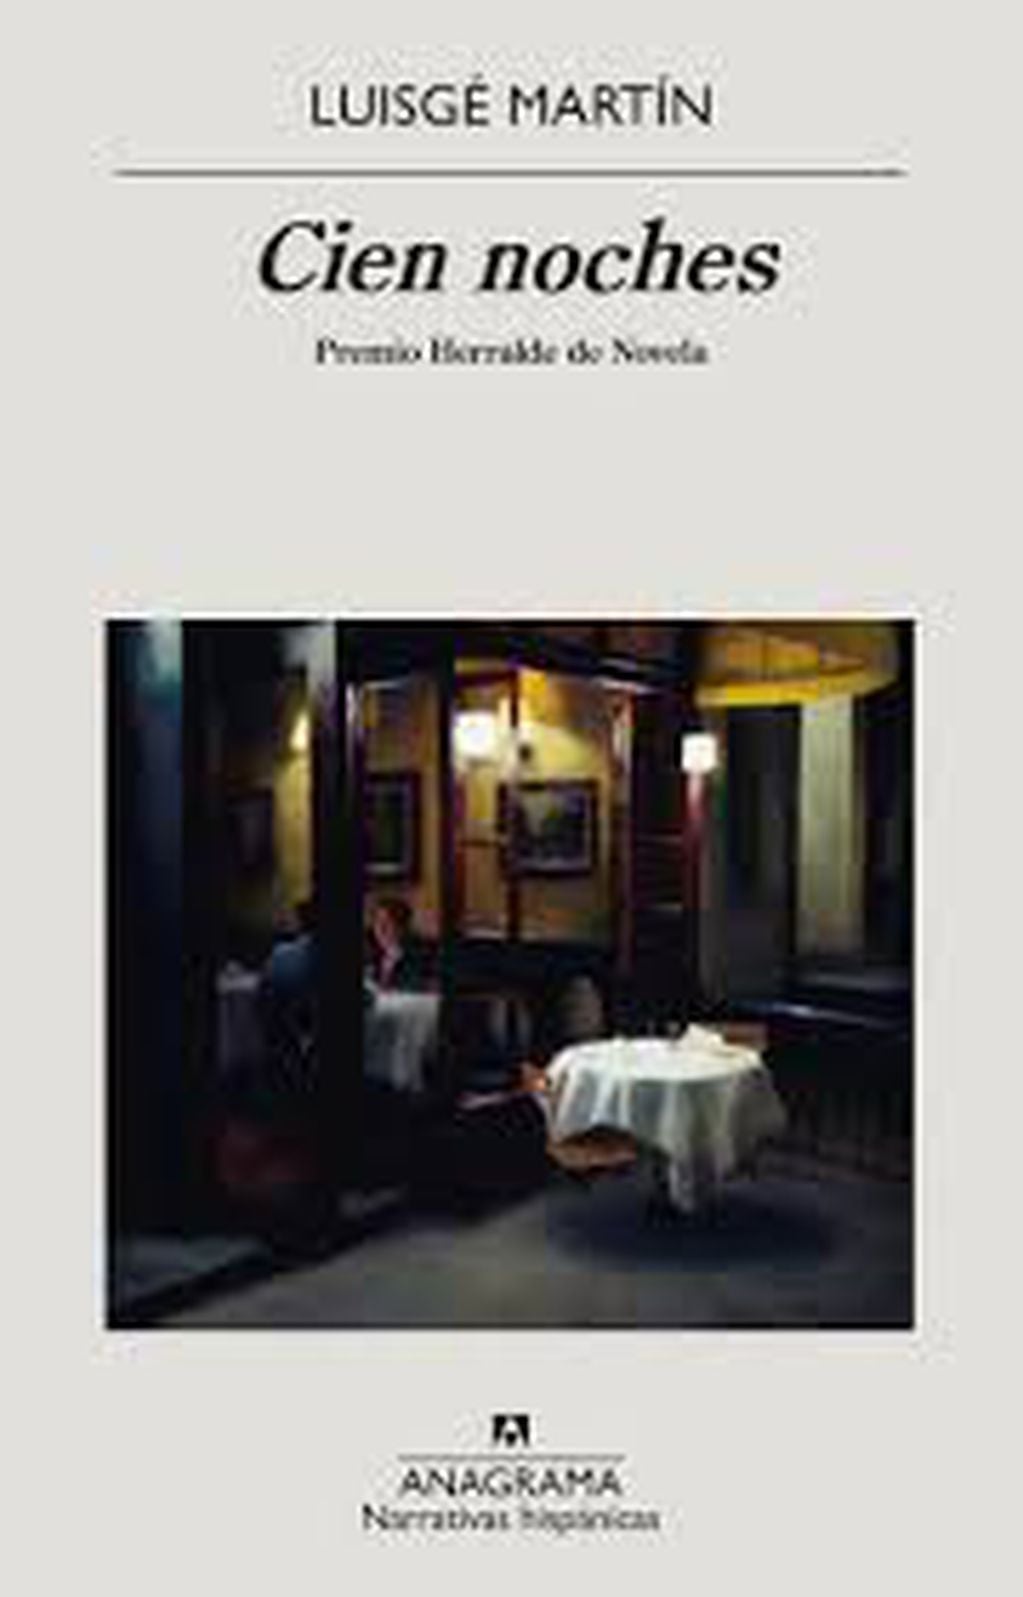 Cien noches ganó en 2020 el Premio Herralde de Novela. El año anterior había obtenido el galardón Nuestra parte de noche, el último libro de la argentina Mariana Enriquez.